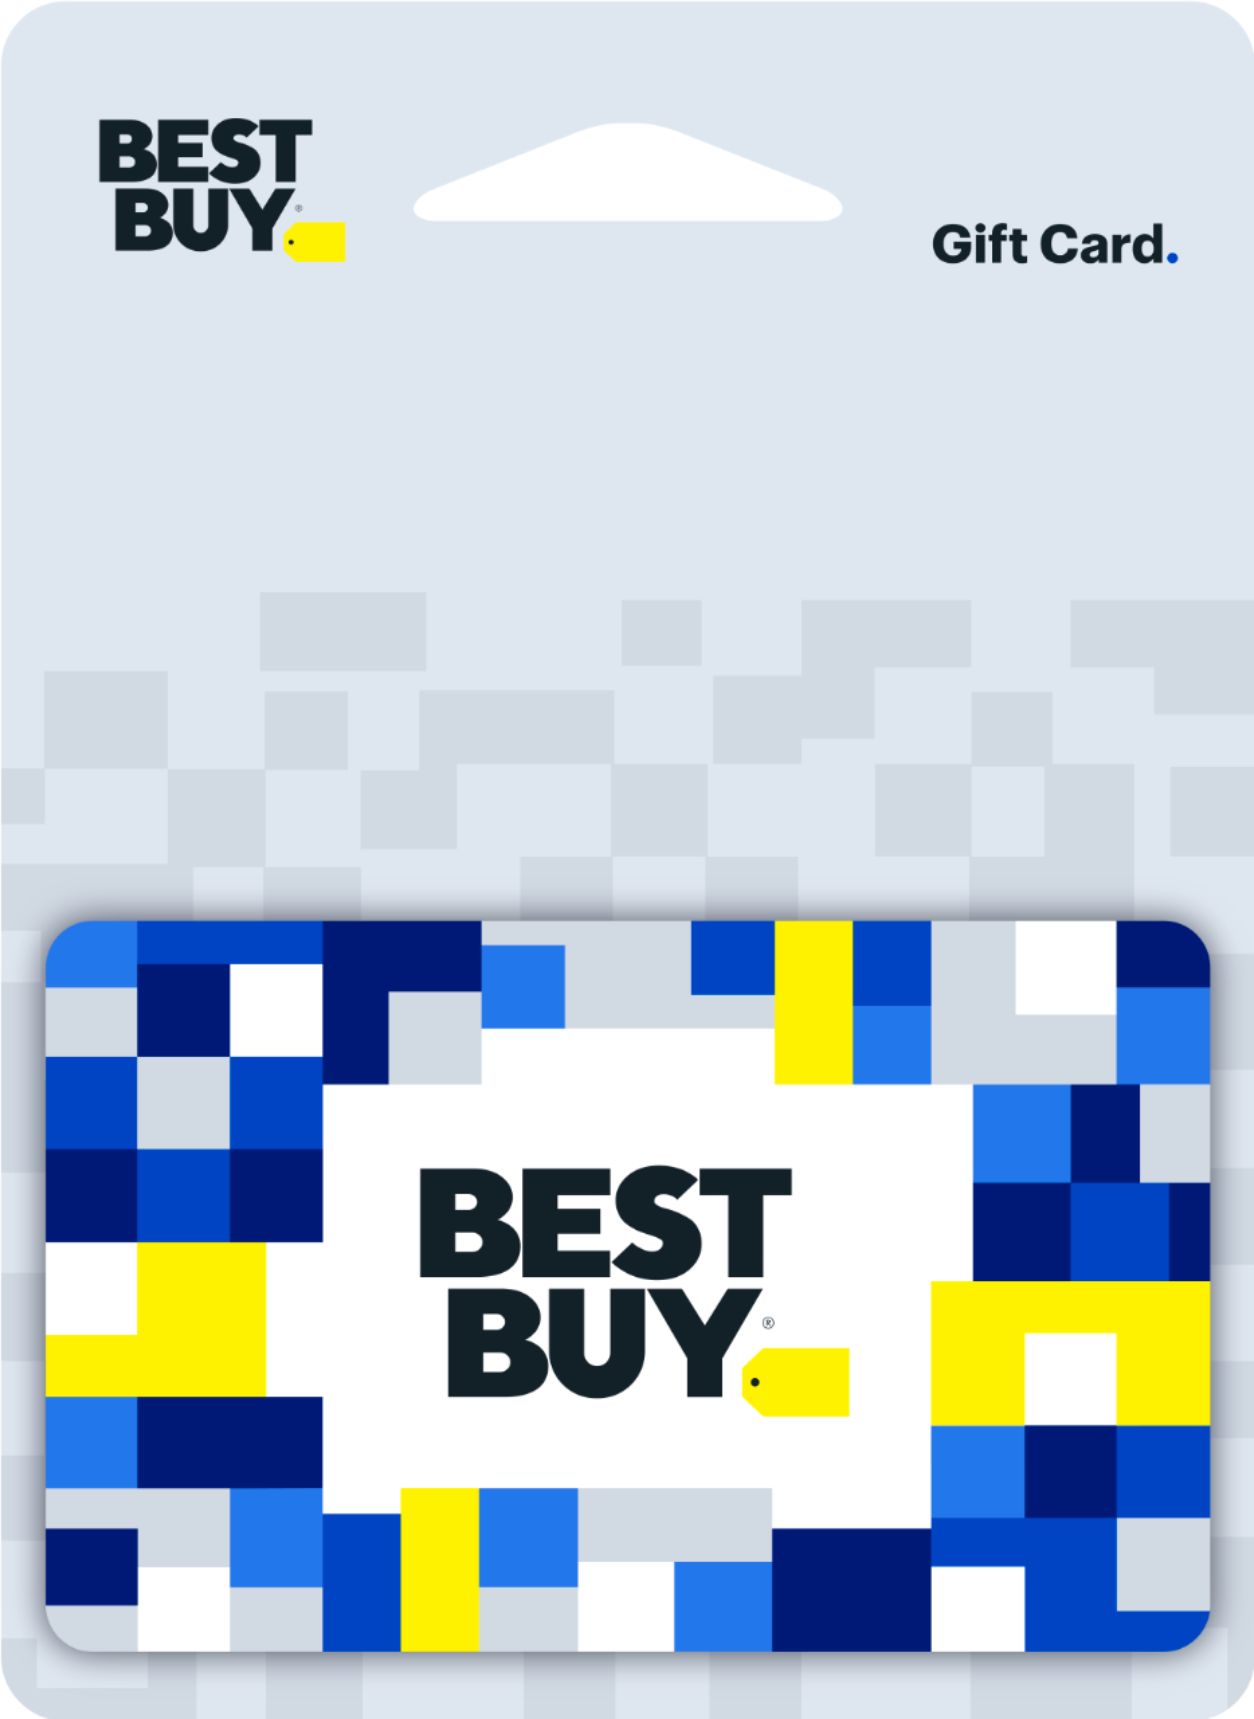 Best buy gift card - NOSH